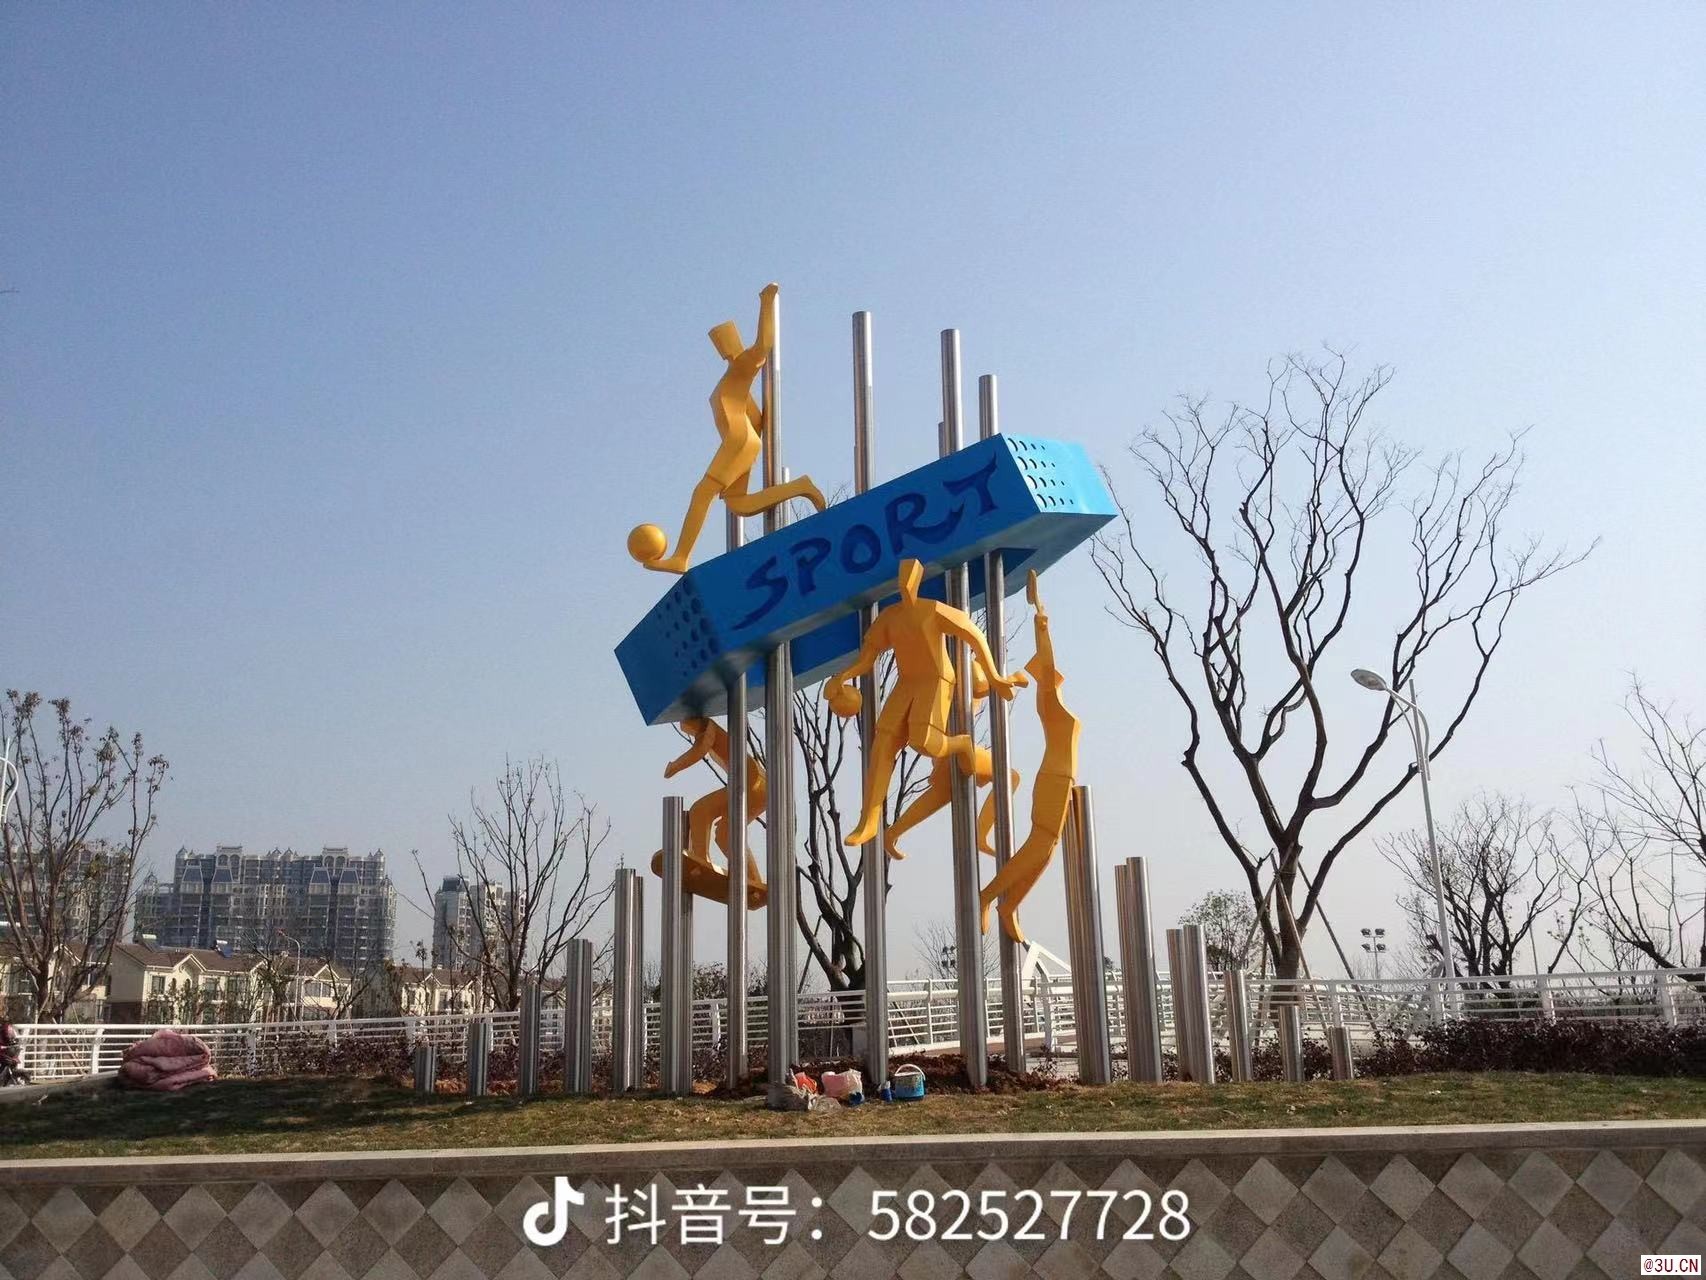 上海塑景雕塑艺术有限公司